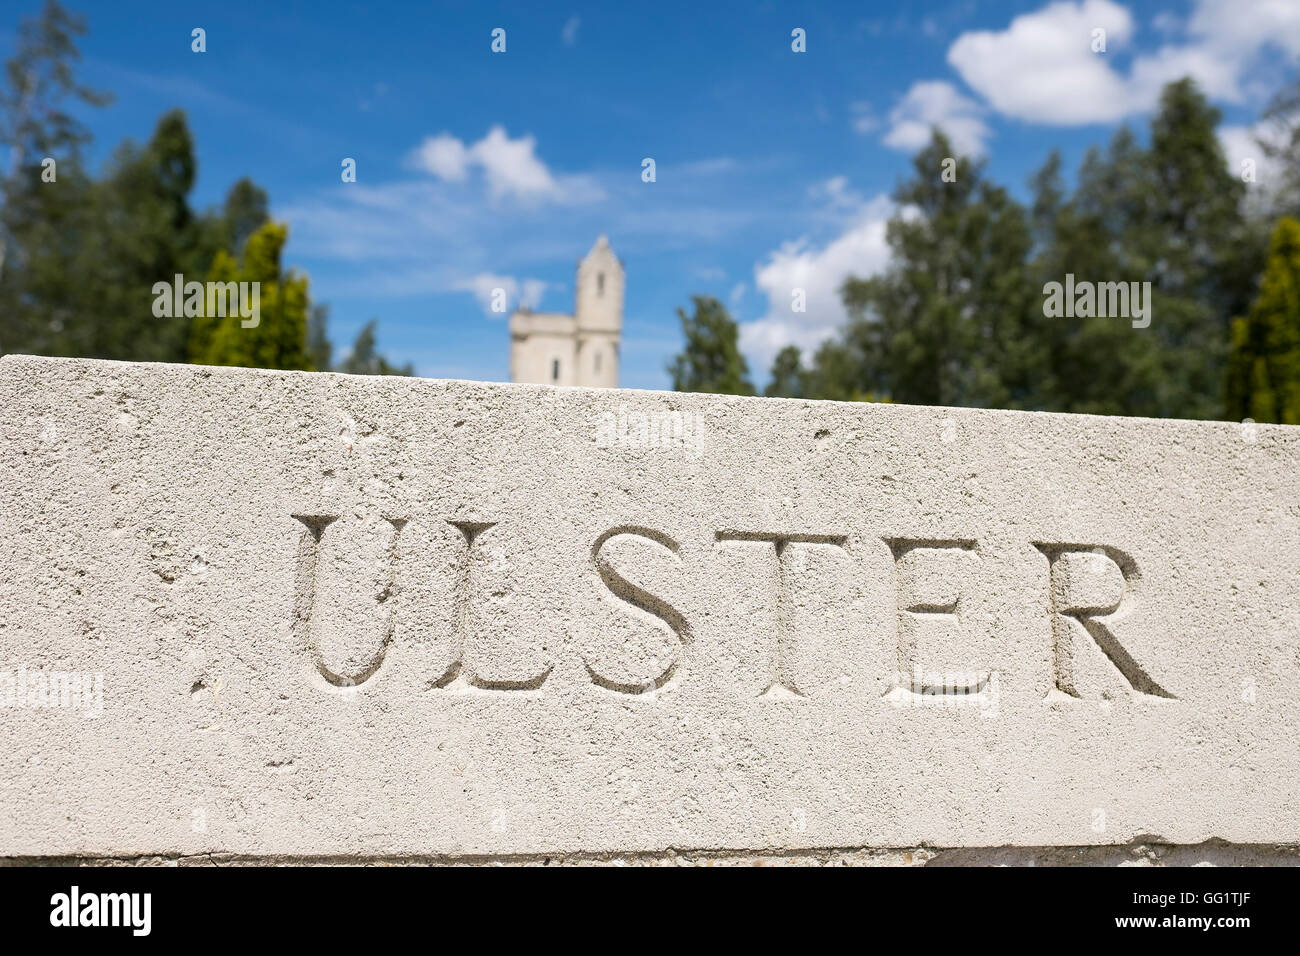 La trentaseiesima edizione (Ulster) Divisione Memorial, l'Ulster Memorial Tower è un memoriale per gli uomini della trentaseiesima (Ulster) Divisione. Foto Stock